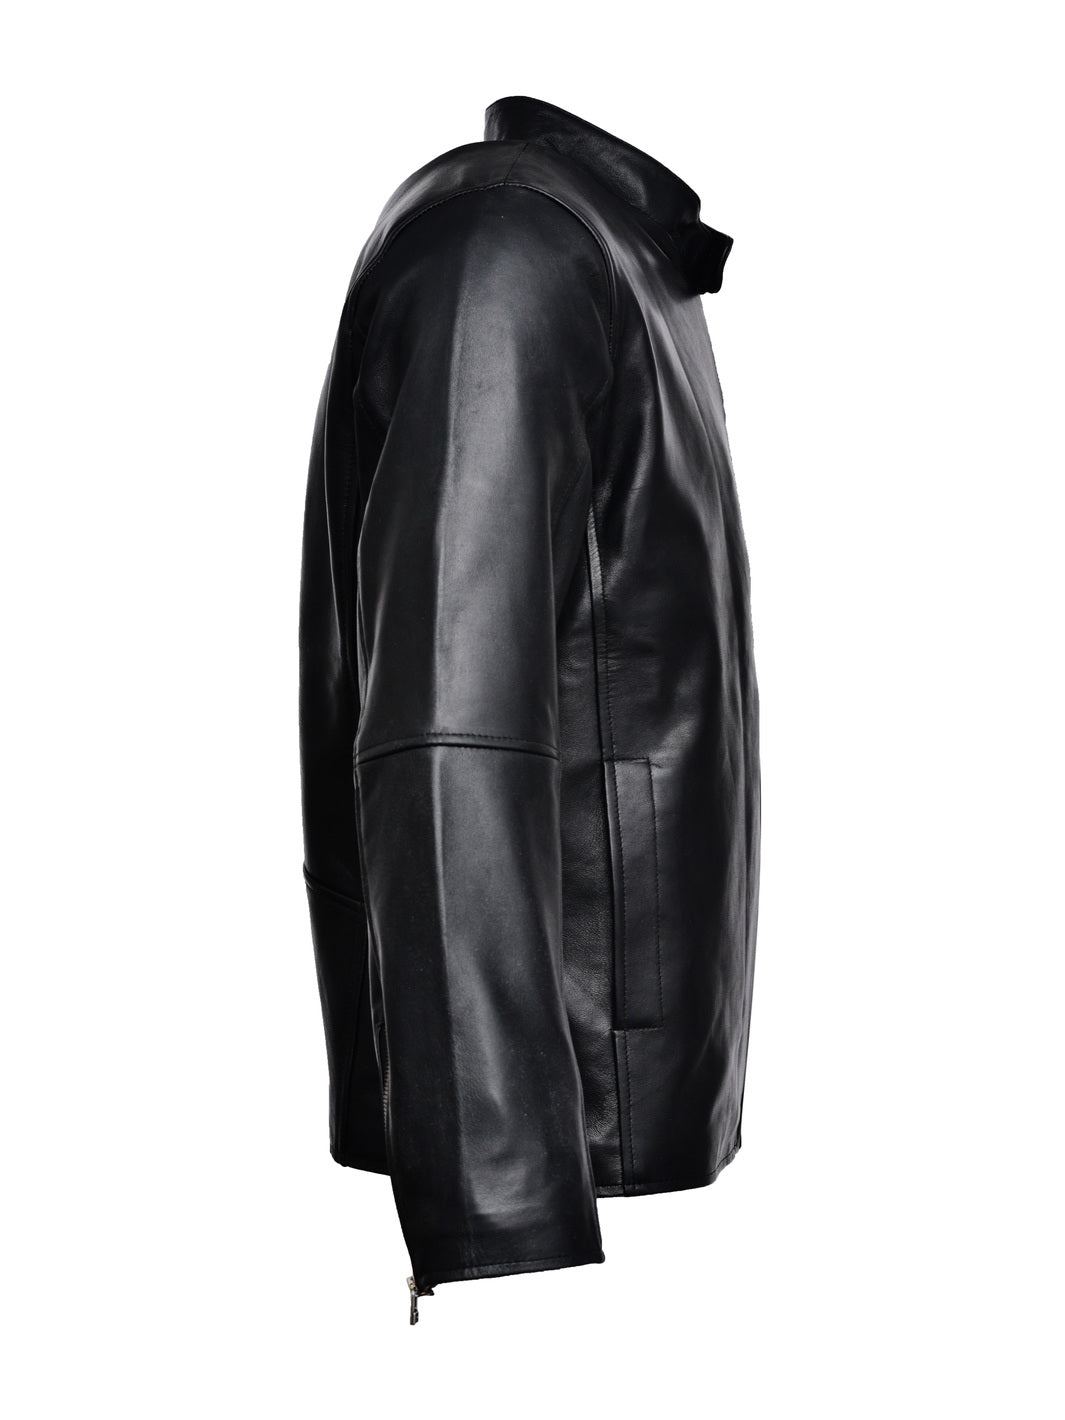 Black Leather Jacket Men Online